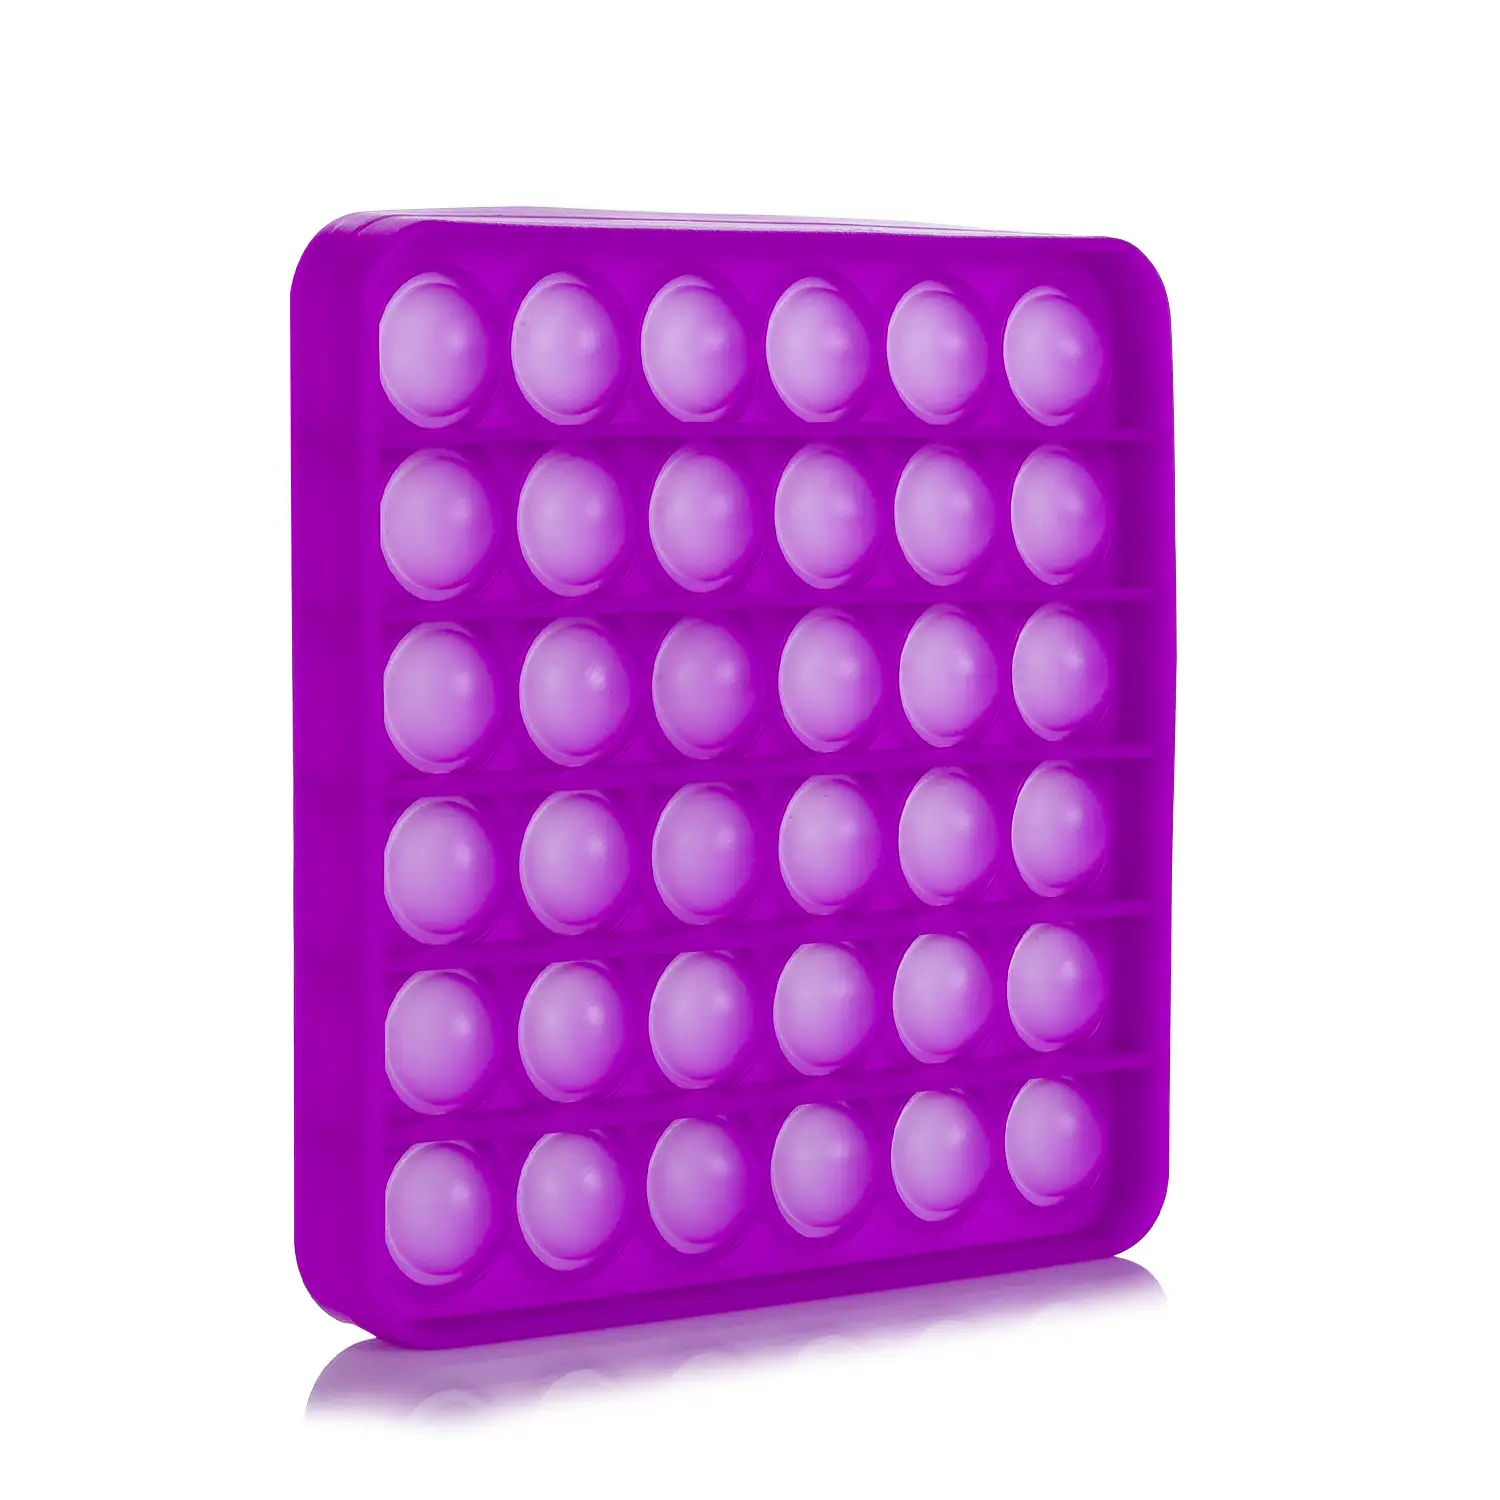 Bubble Pop It juguete sensitivo desestresante, burbujas de silicona para apretar y pulsar. Diseño cuadrado.